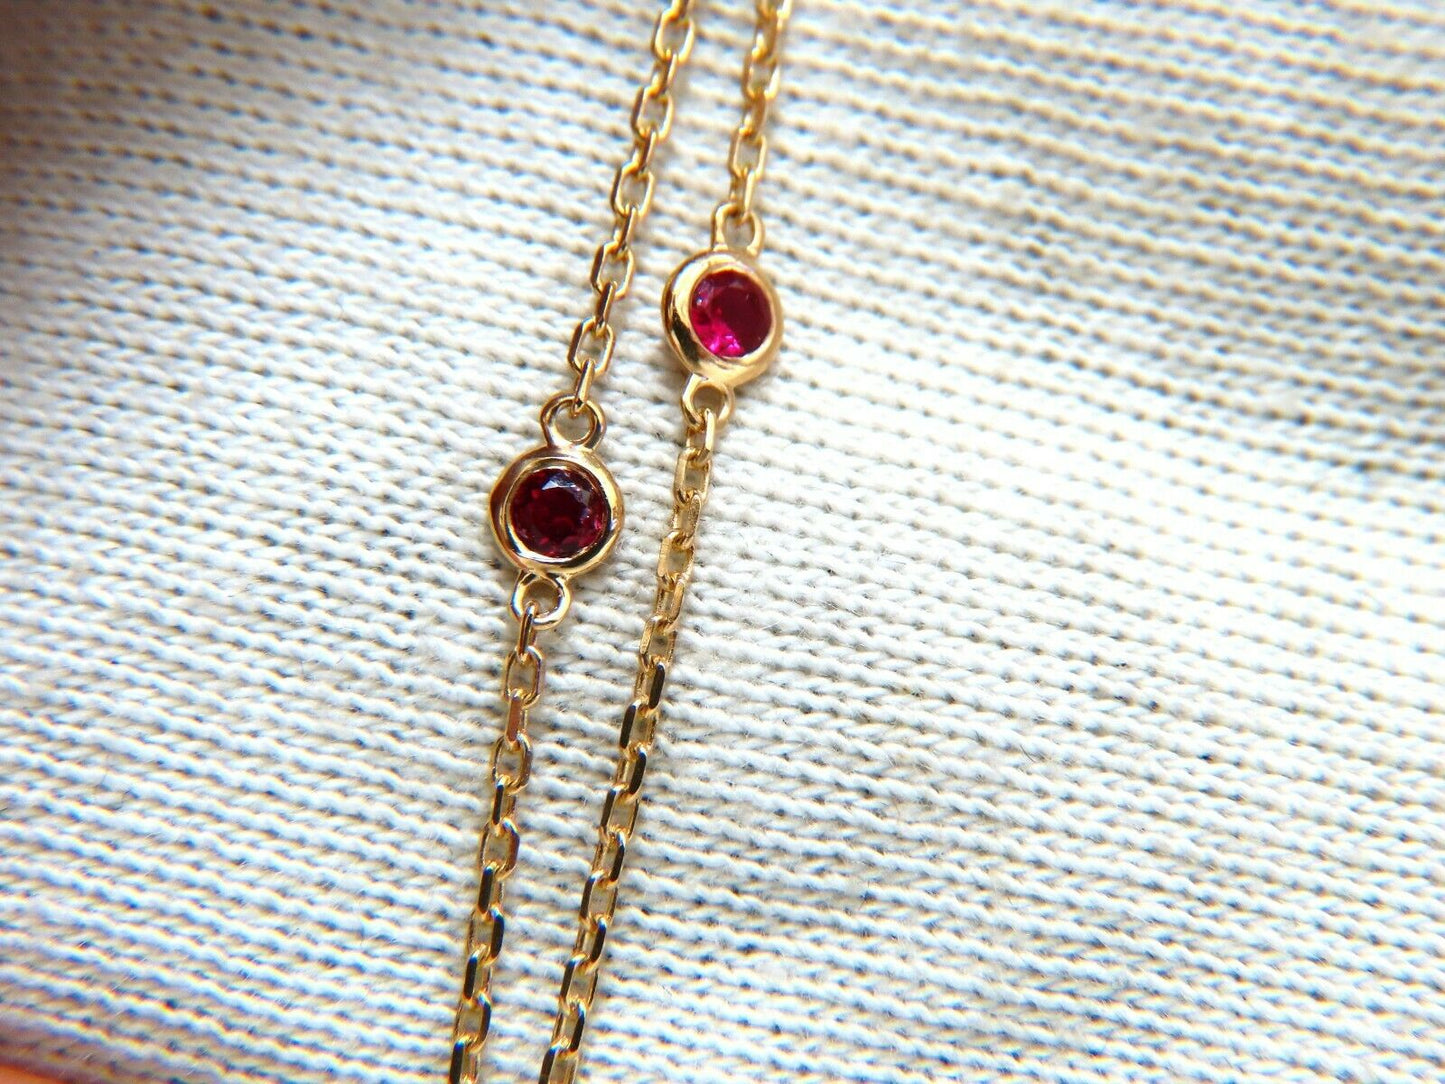 .34ct Natural Fancy color Heart Diamond Necklace 14 Karat